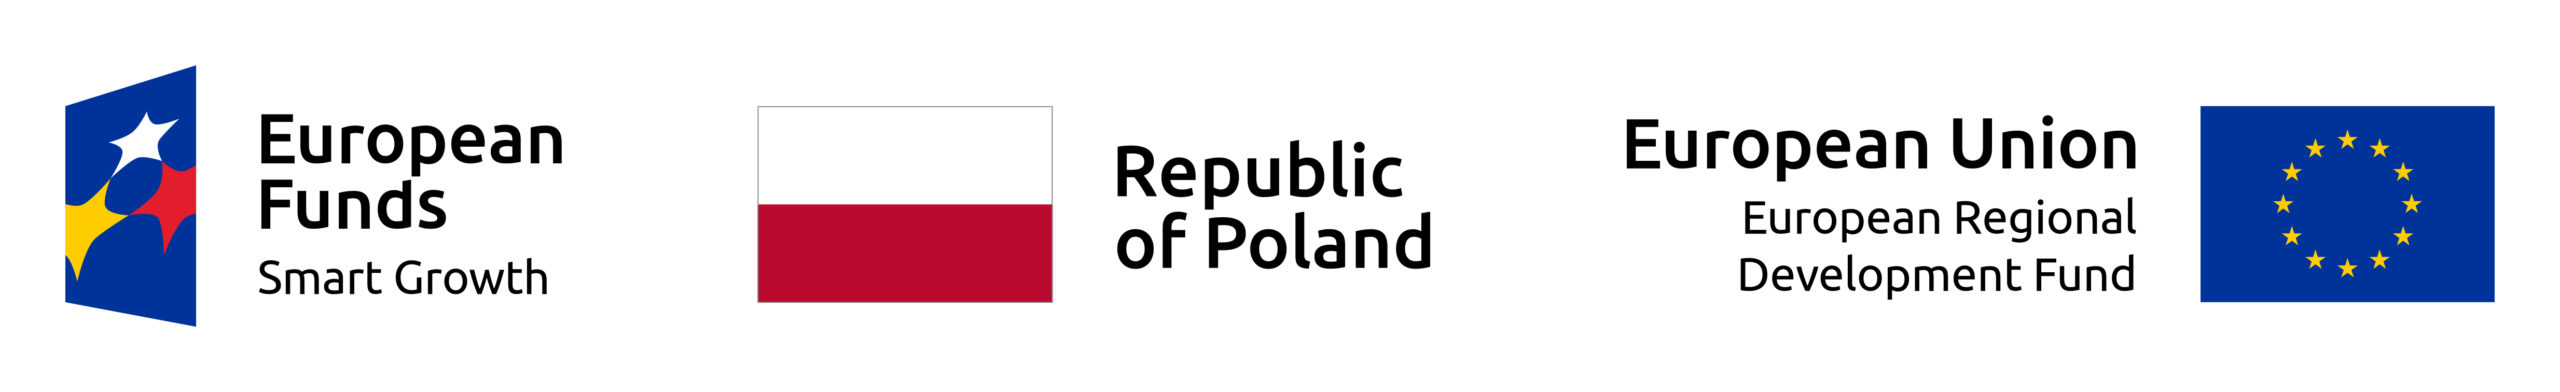 EU flag, flag of Republic of Poland, European Fund logo next to each other on a white background